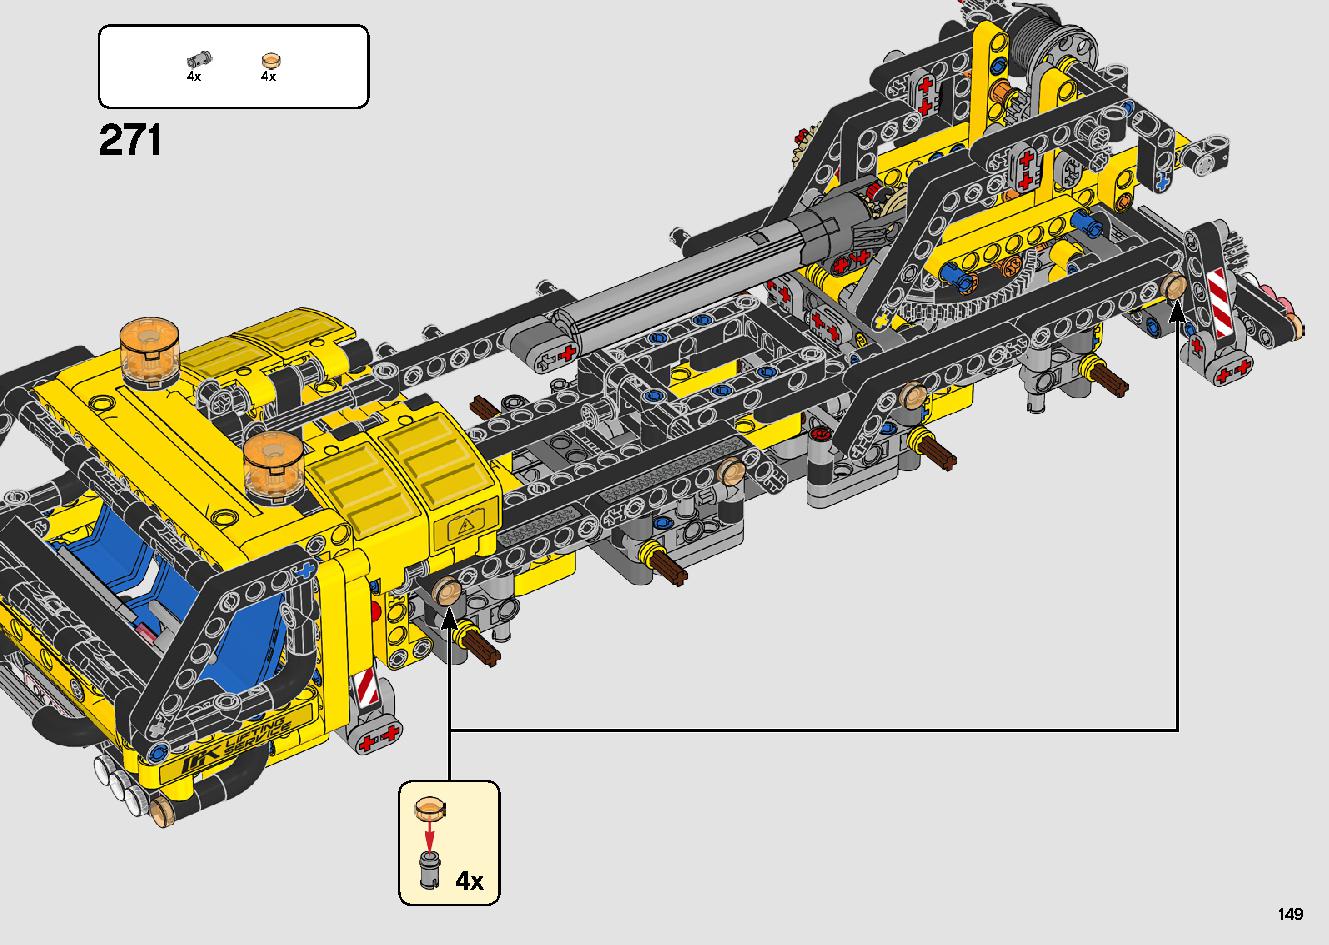 移動式クレーン車 42108 レゴの商品情報 レゴの説明書・組立方法 149 page